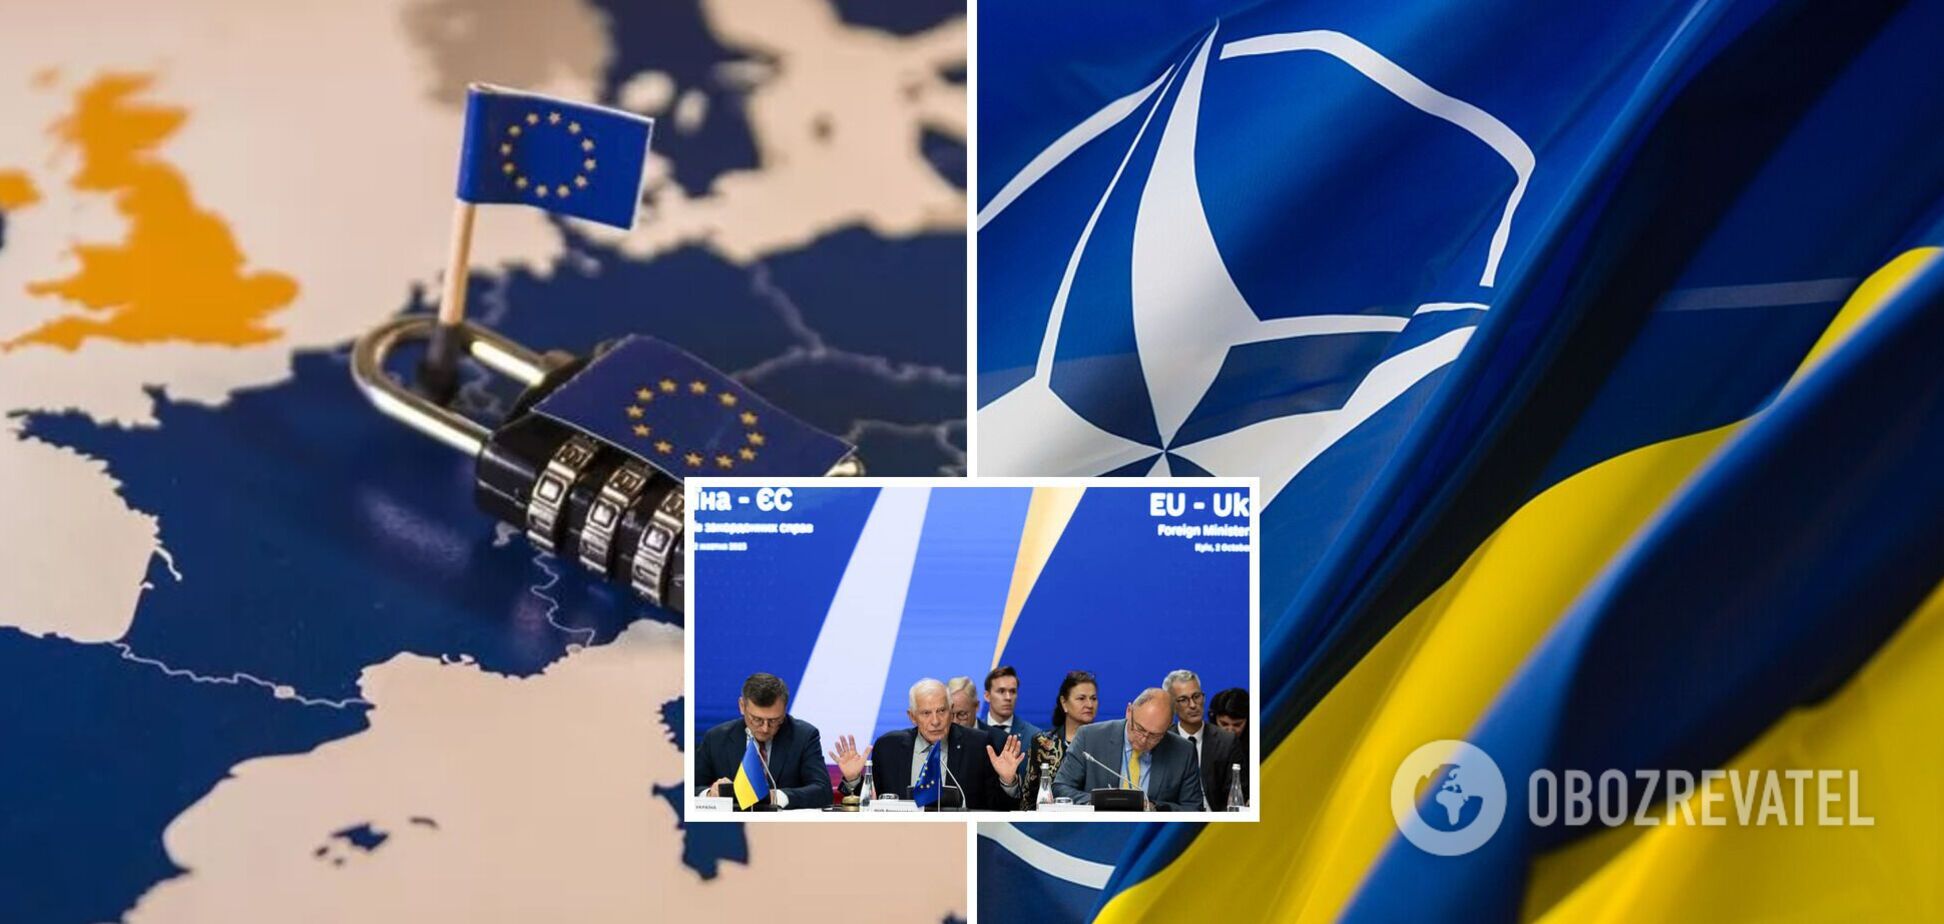 Имеем полтора года на вопросы членства в НАТО и ЕС, нужно готовиться к сложным временам. Интервью с Огрызко